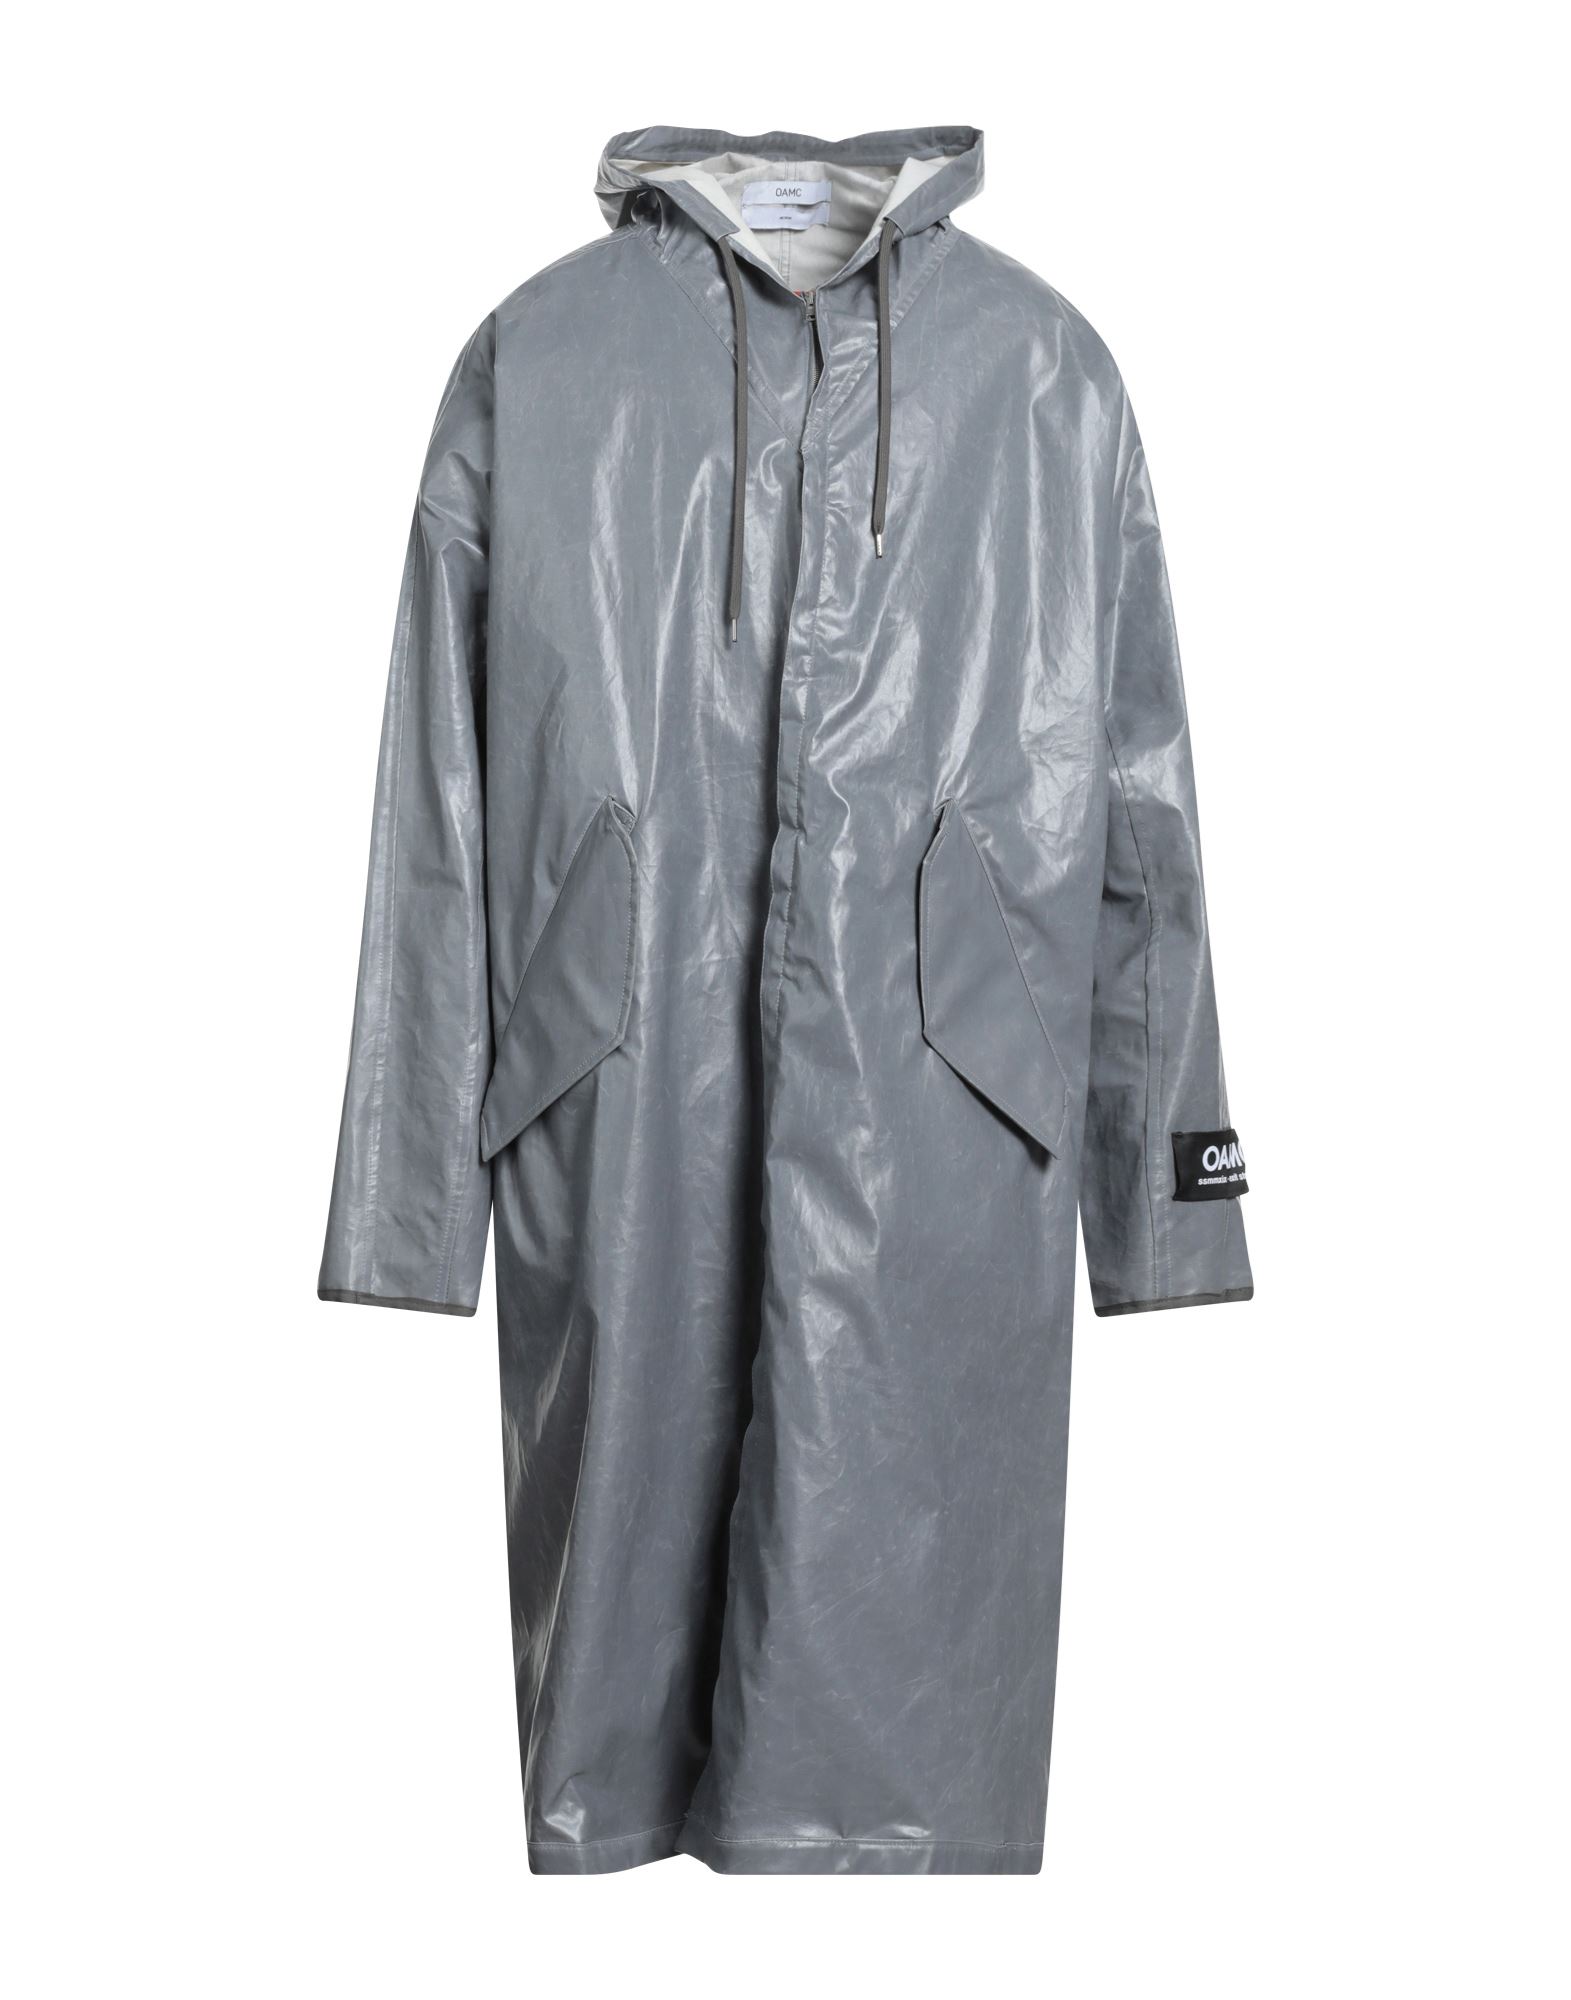 Oamc Overcoats In Grey